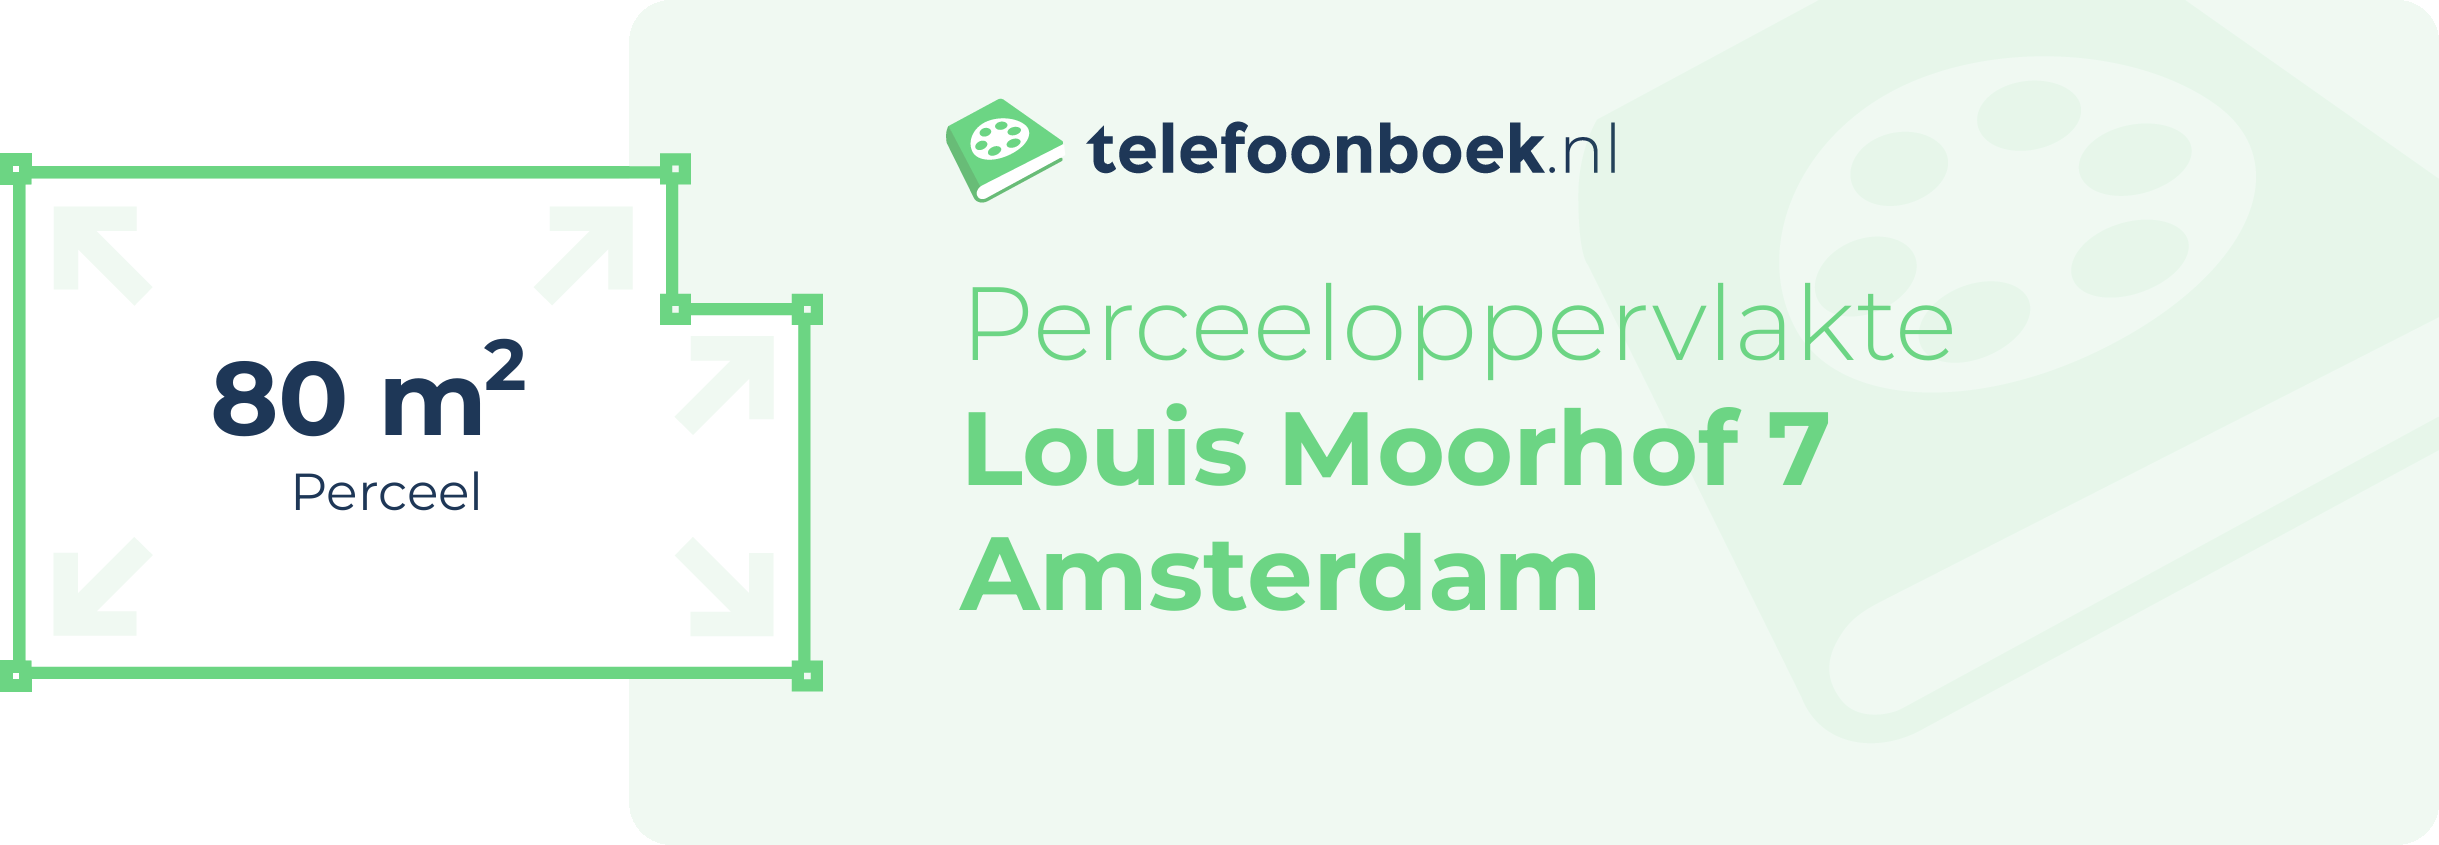 Perceeloppervlakte Louis Moorhof 7 Amsterdam